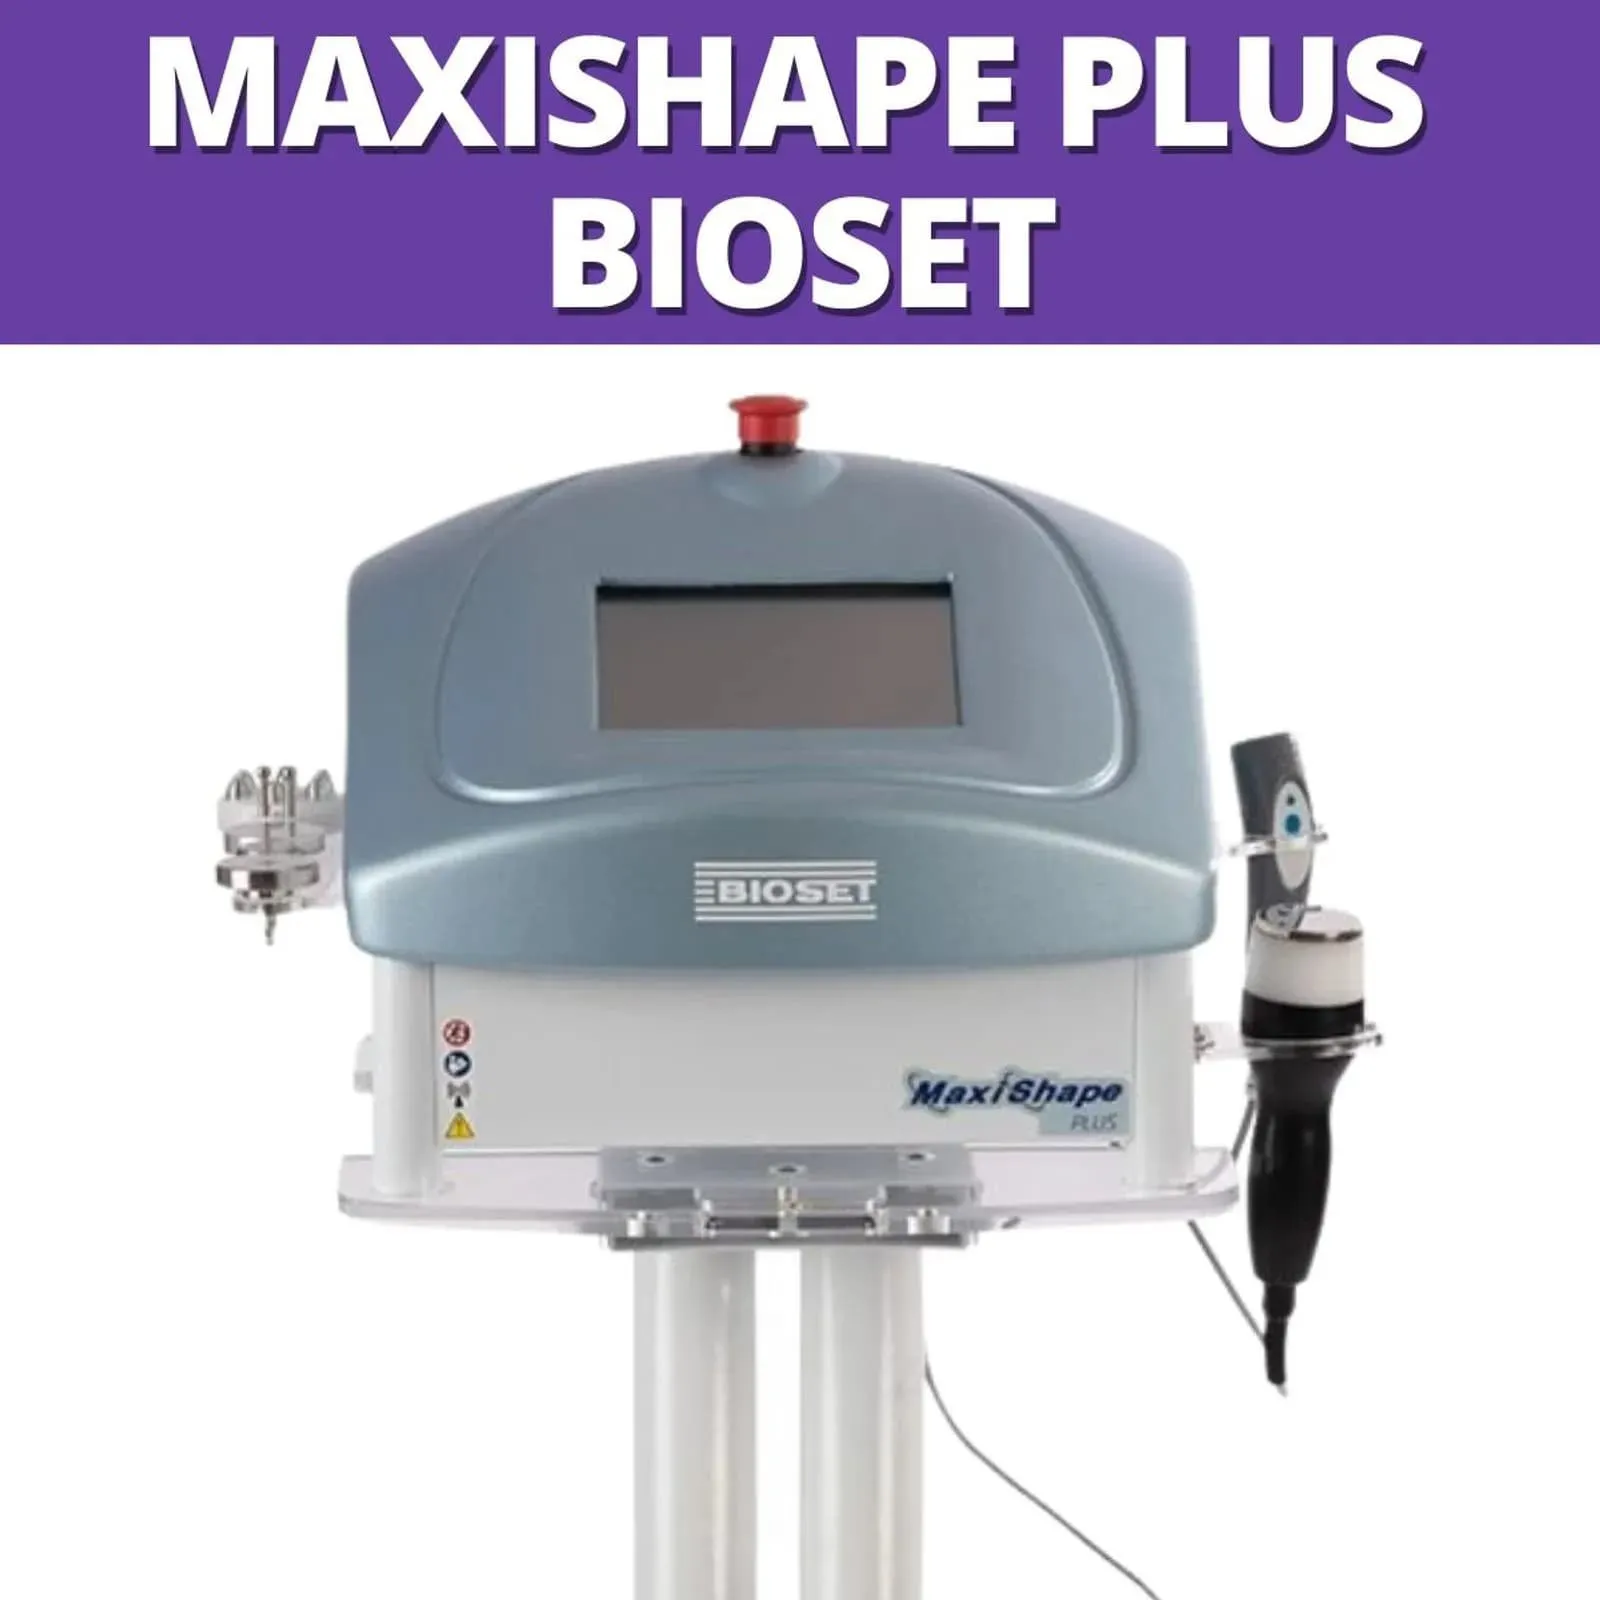 Imagem do aparelho Maxishape Bioset - Radiofrequência, Ultracavitação e Ondas de Choque (PSW)